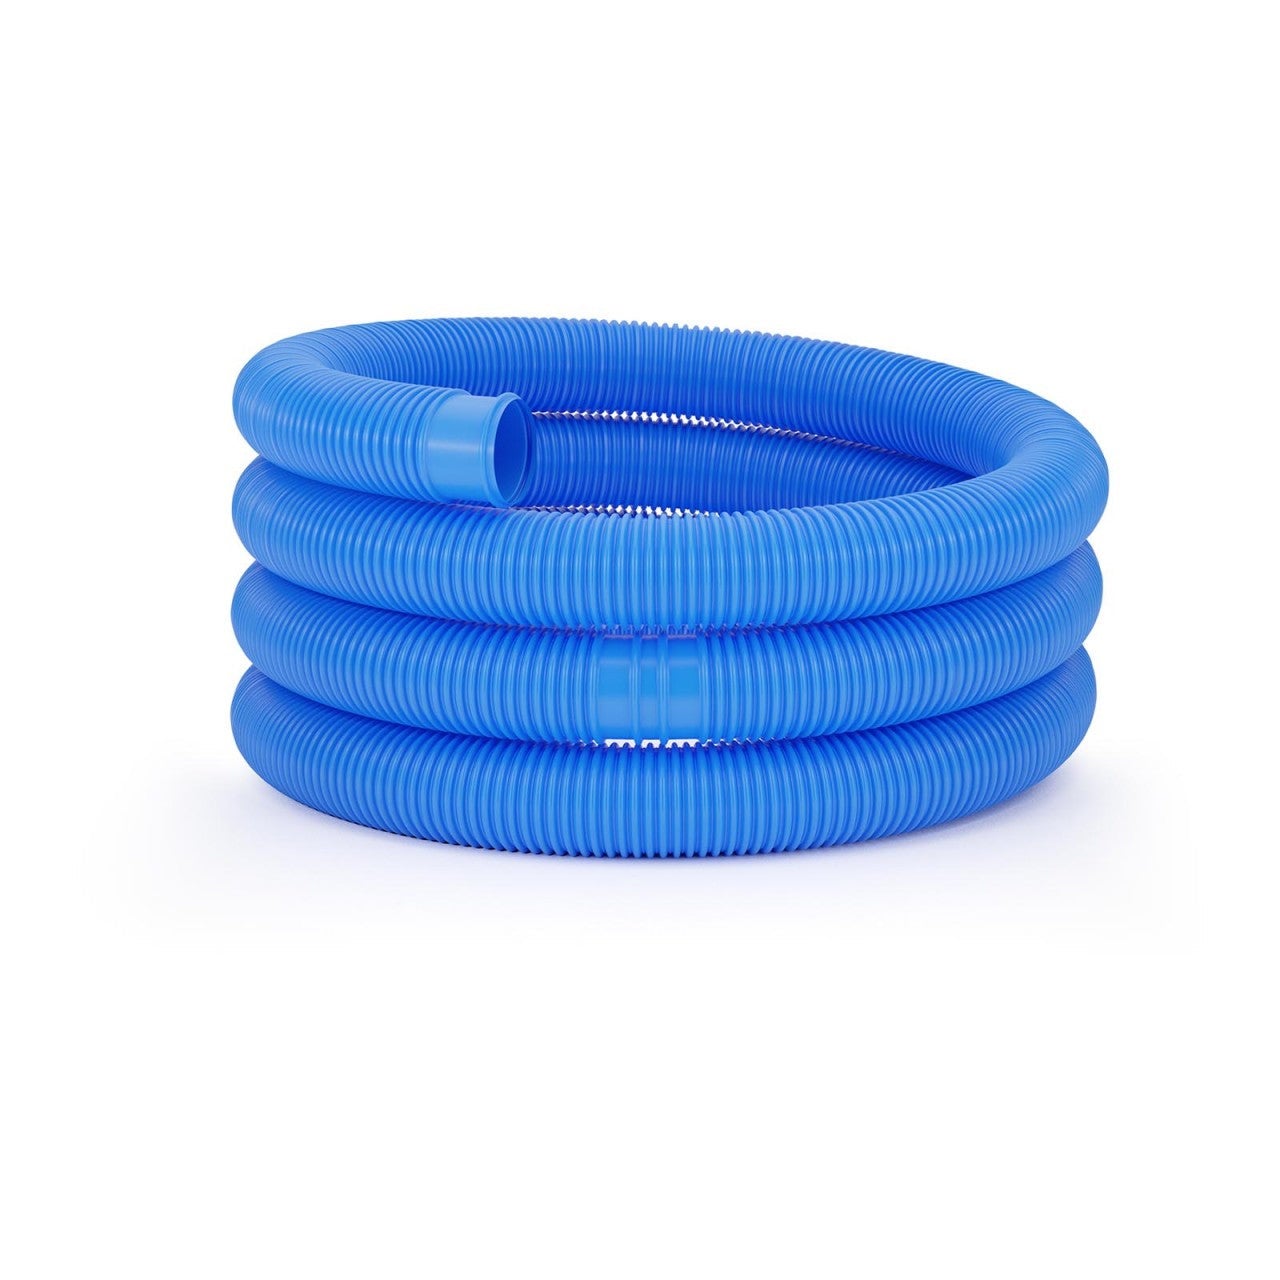 Ausla Tuyau flexible pour piscine 38 mm 6 m bleu divisible tous les 1,1 m résistant aux rayons UV et aux agents atmosphériques 